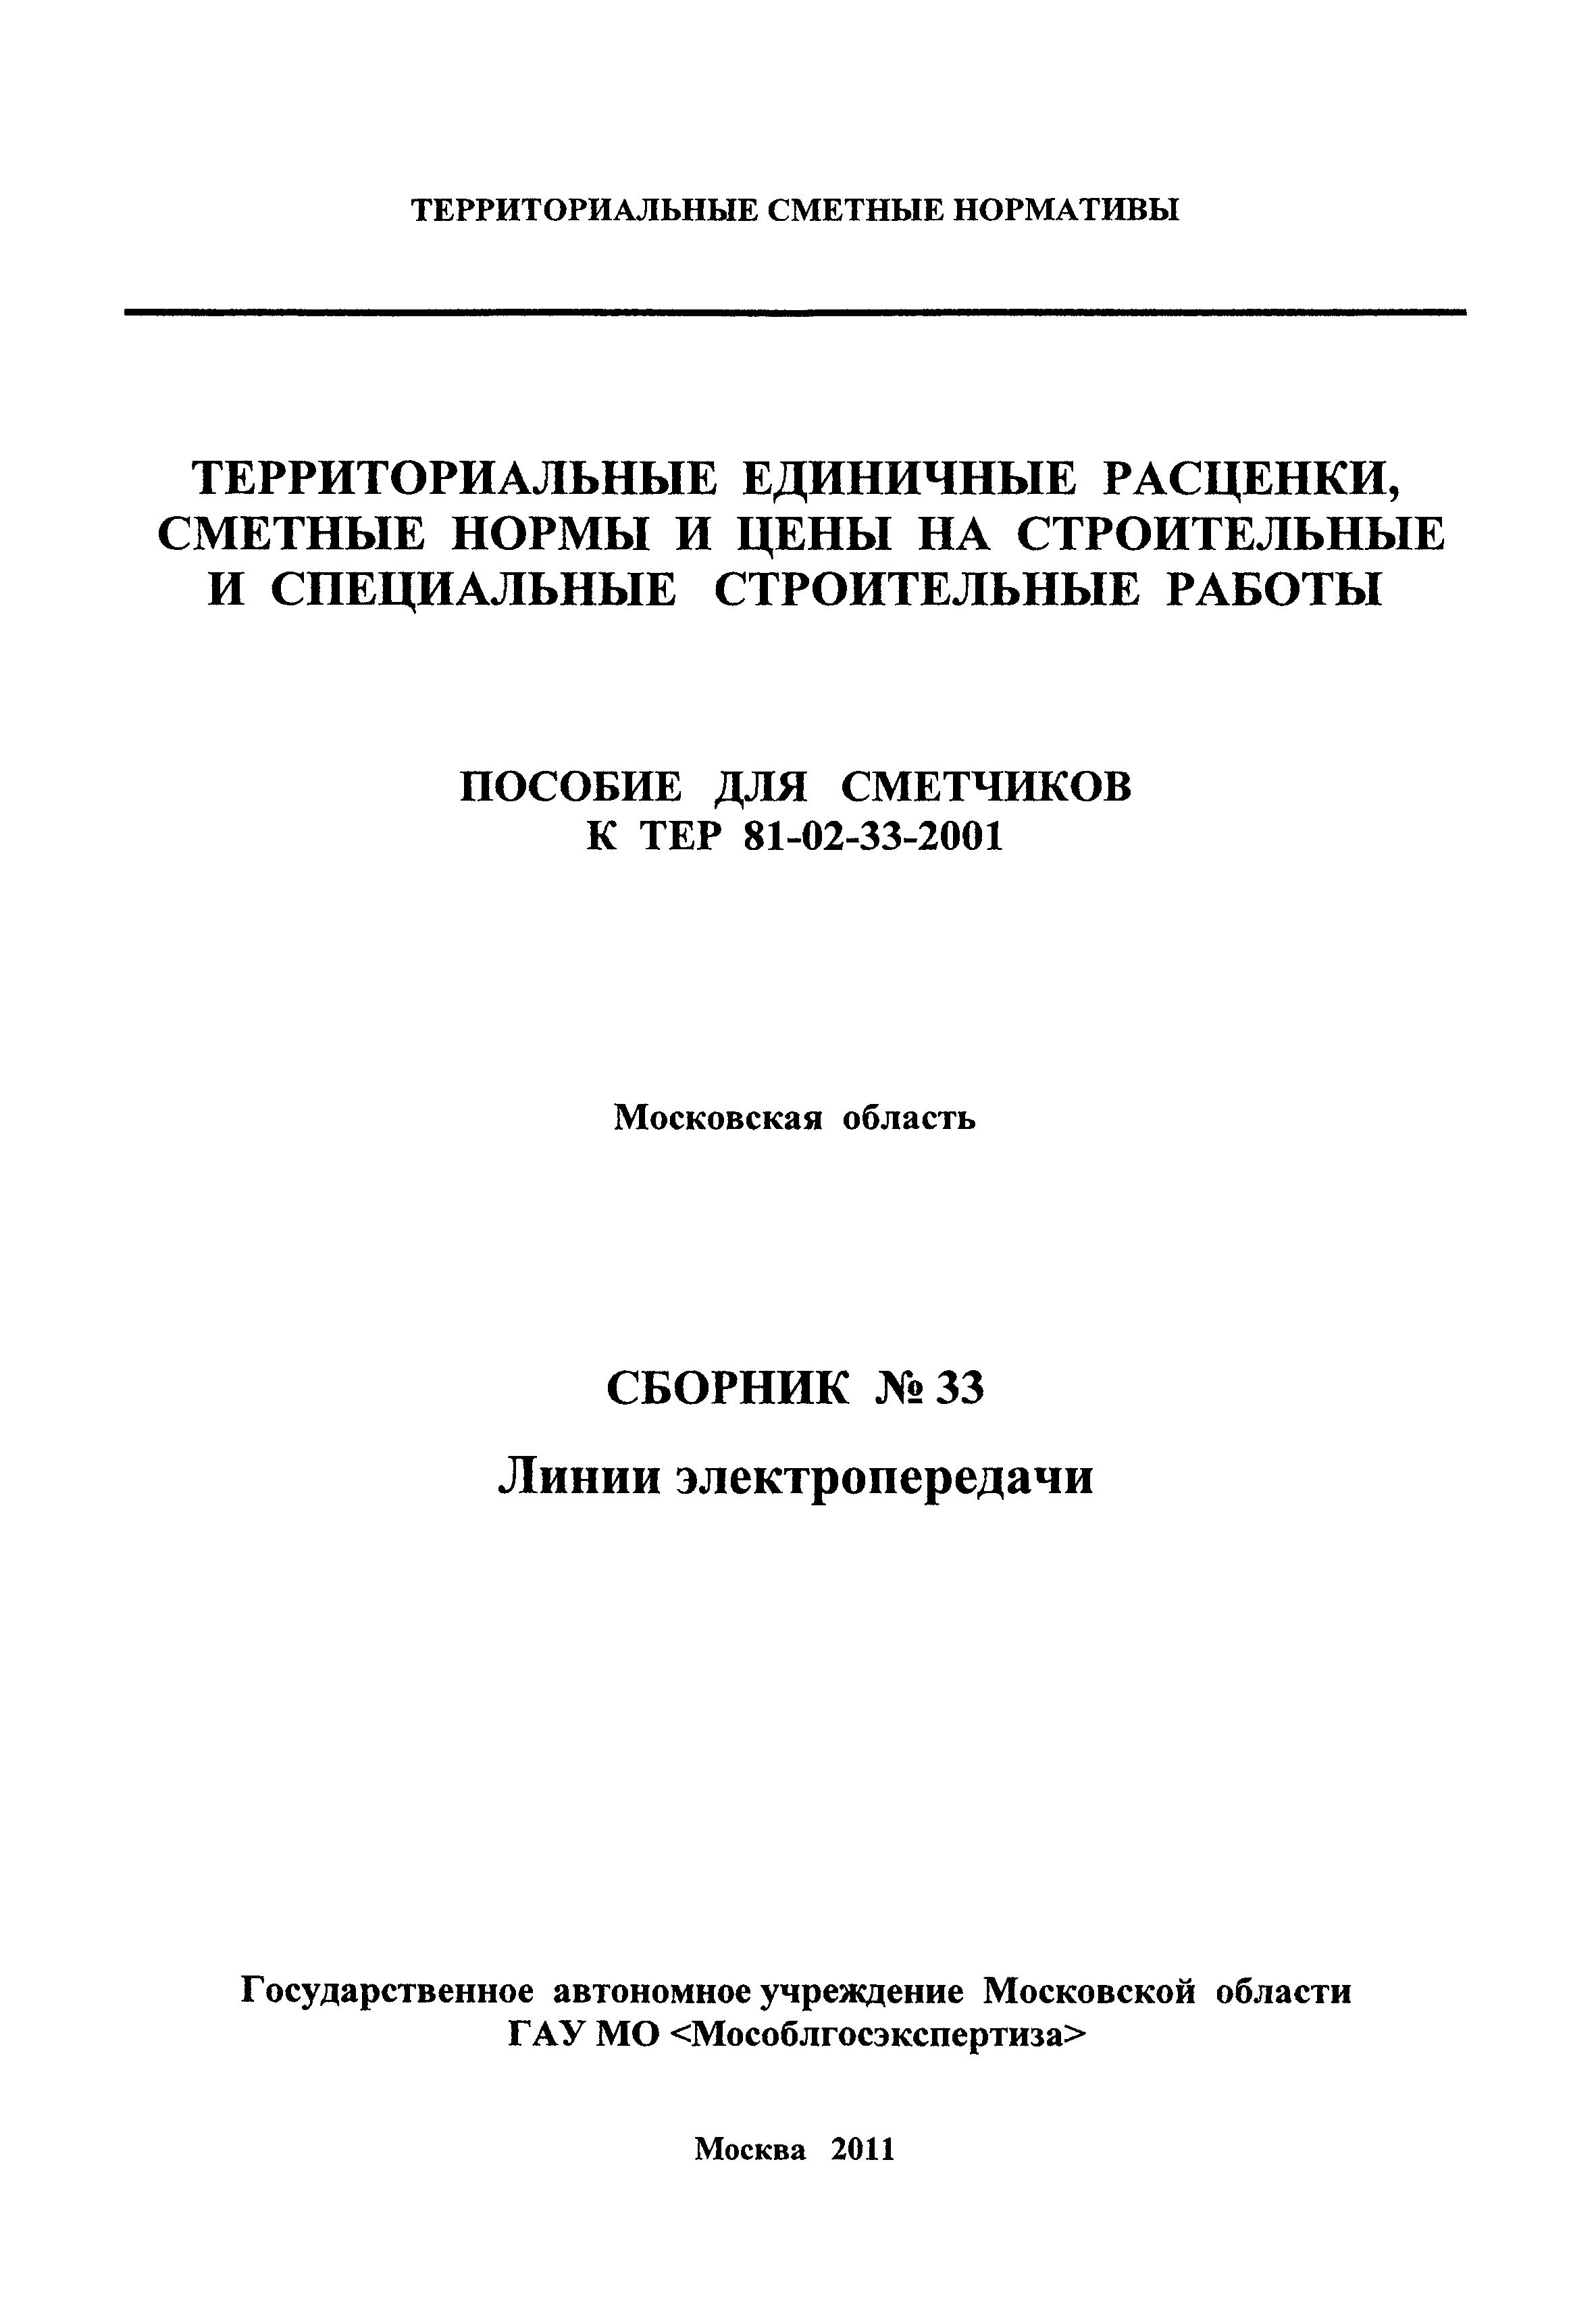 ГЭСНПиТЕР 2001-33 Московской области